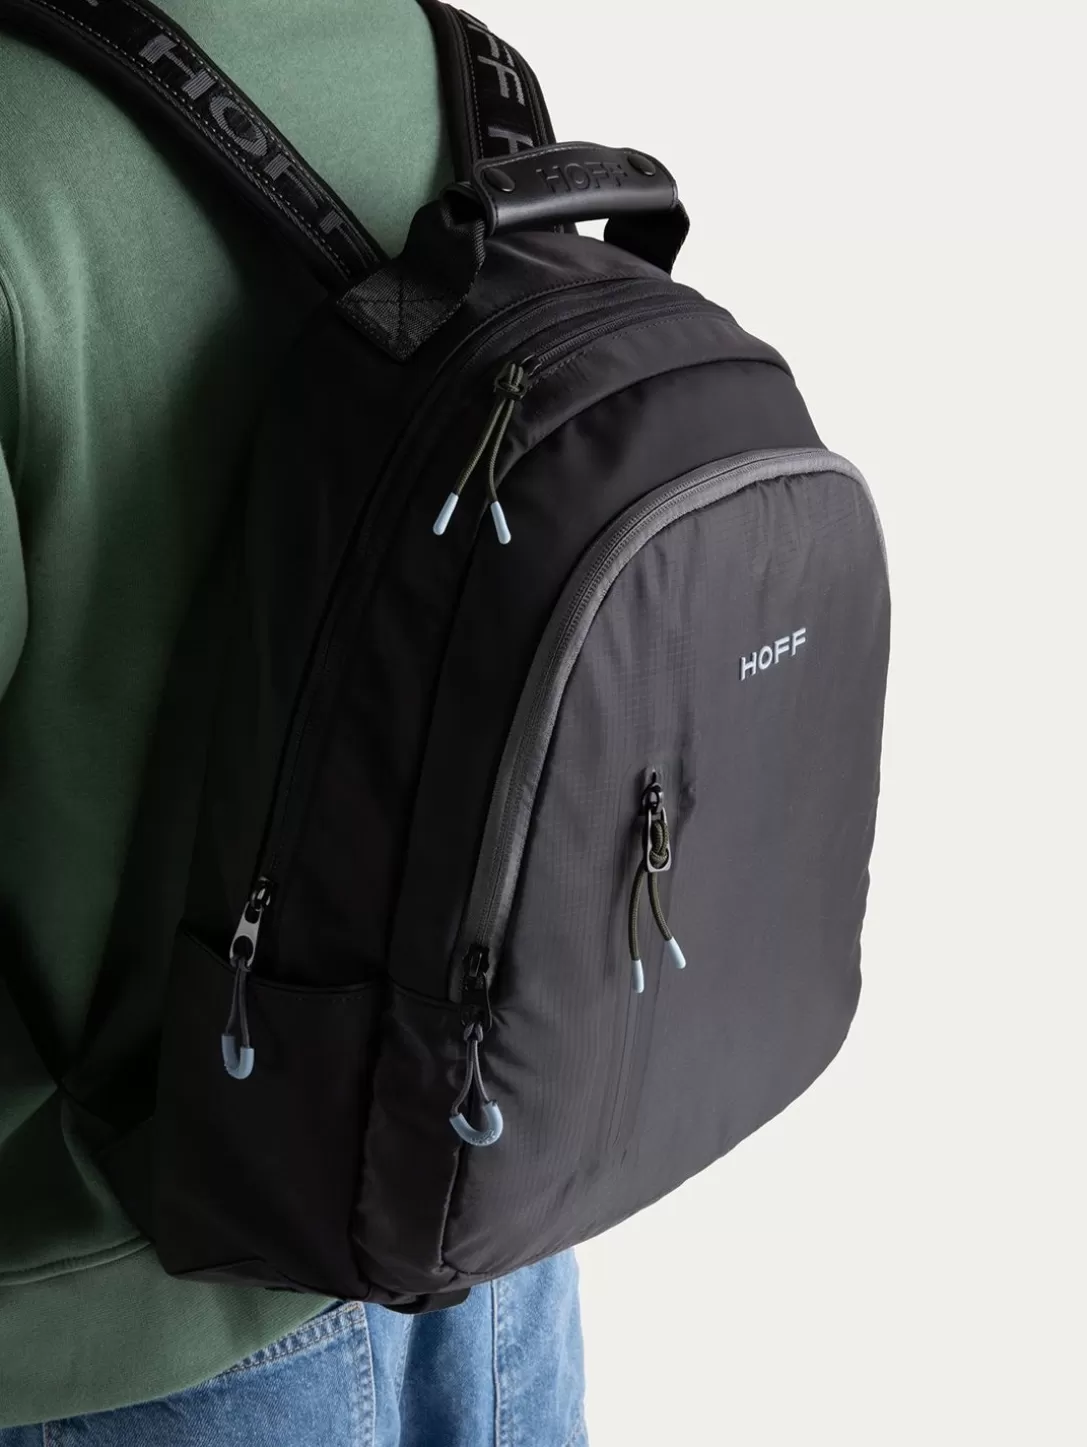 HOFF Commuter Backpack Black Sale